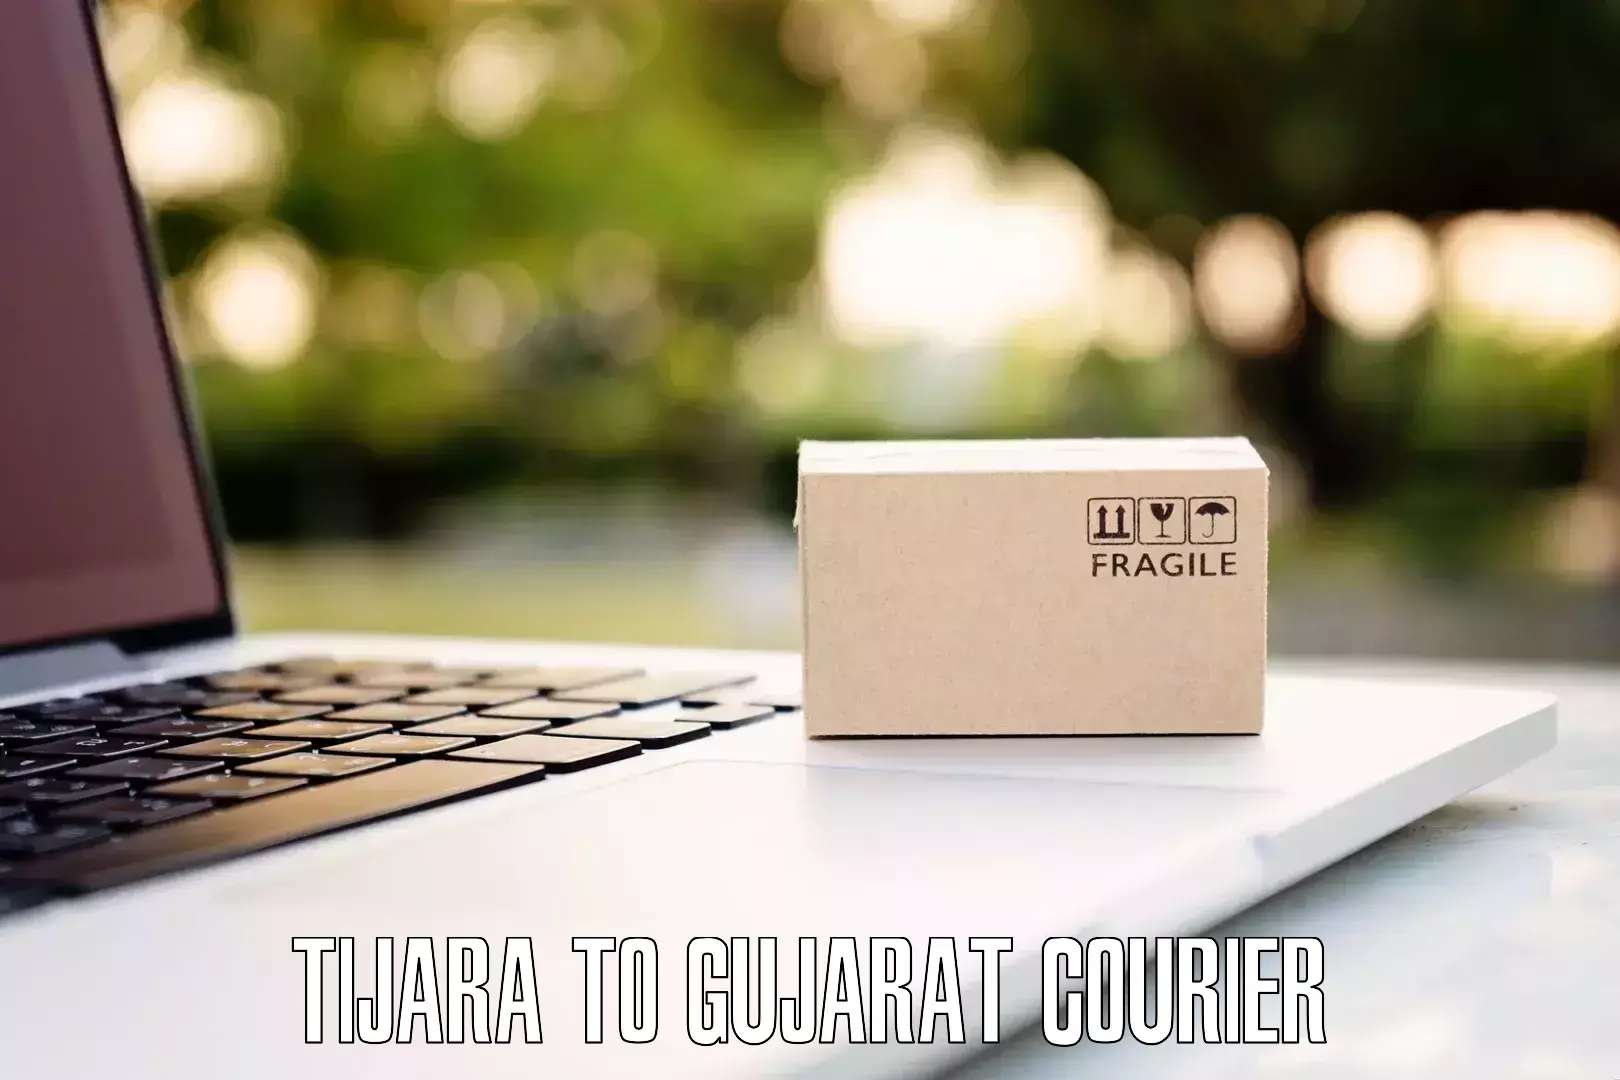 Customized luggage delivery in Tijara to Gujarat